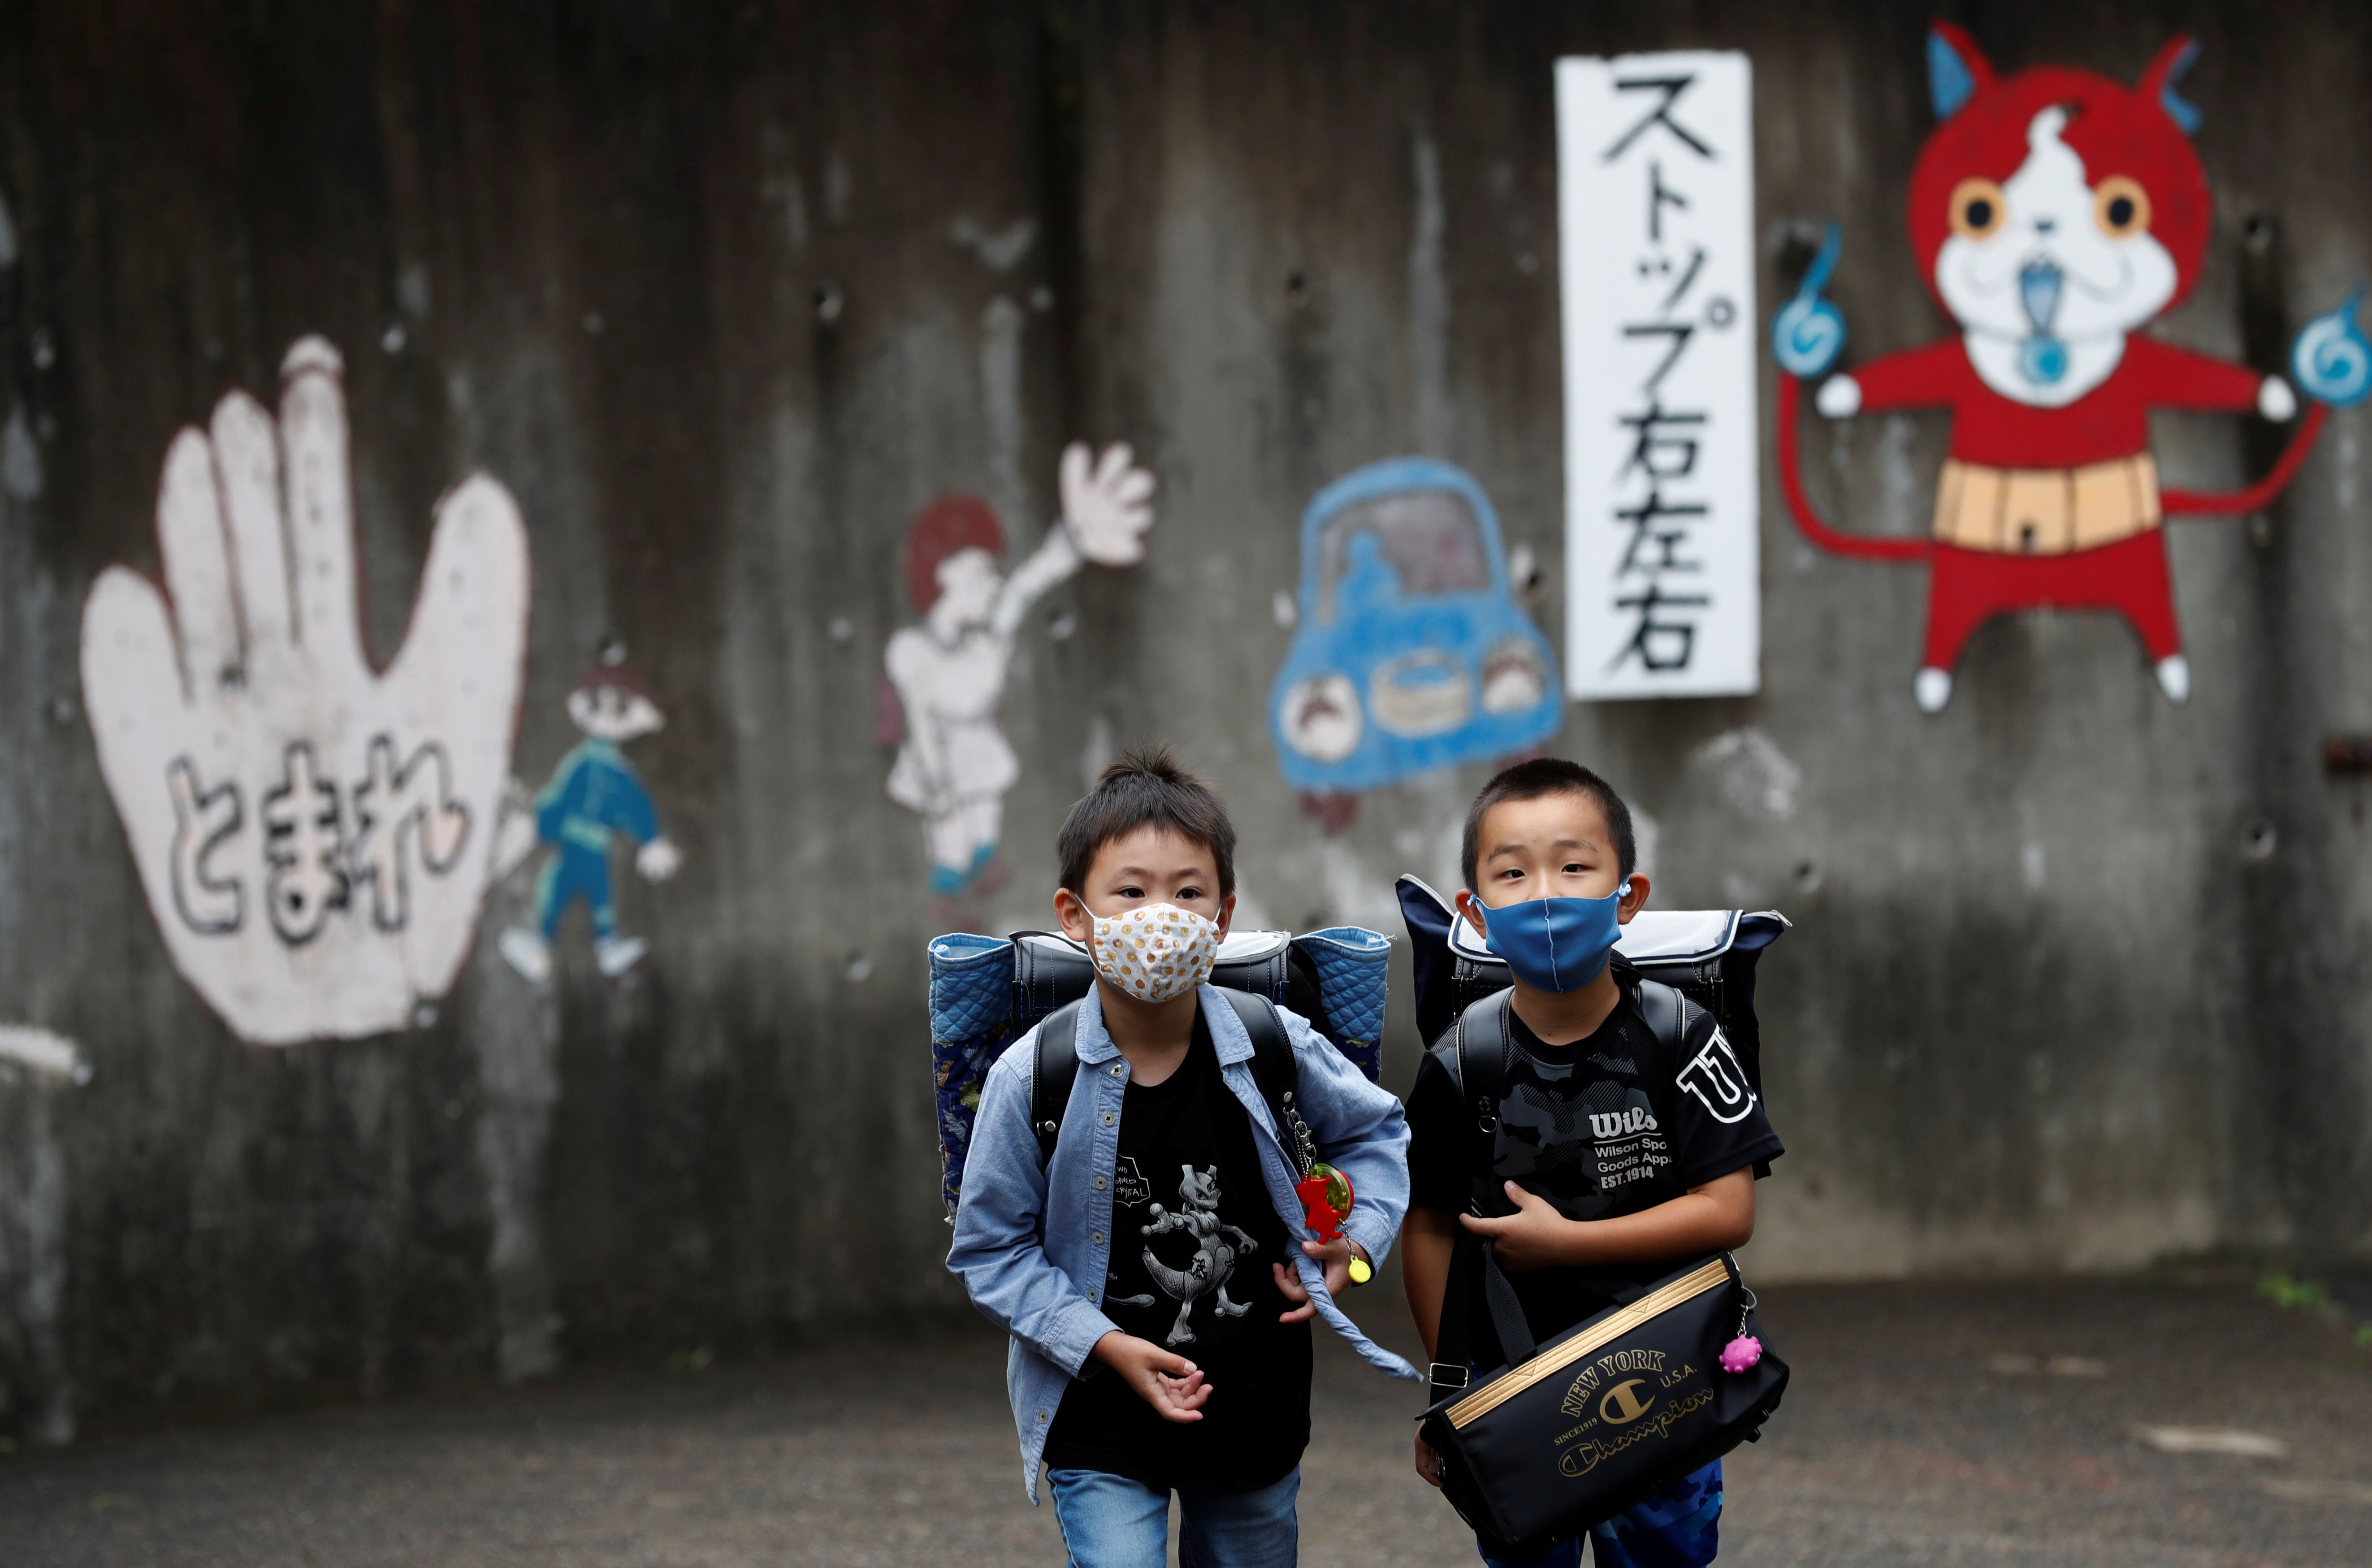 Los niños sufrieron especialmente las consecuencias de la pandemia por el cierre de escuelas (Reuters)